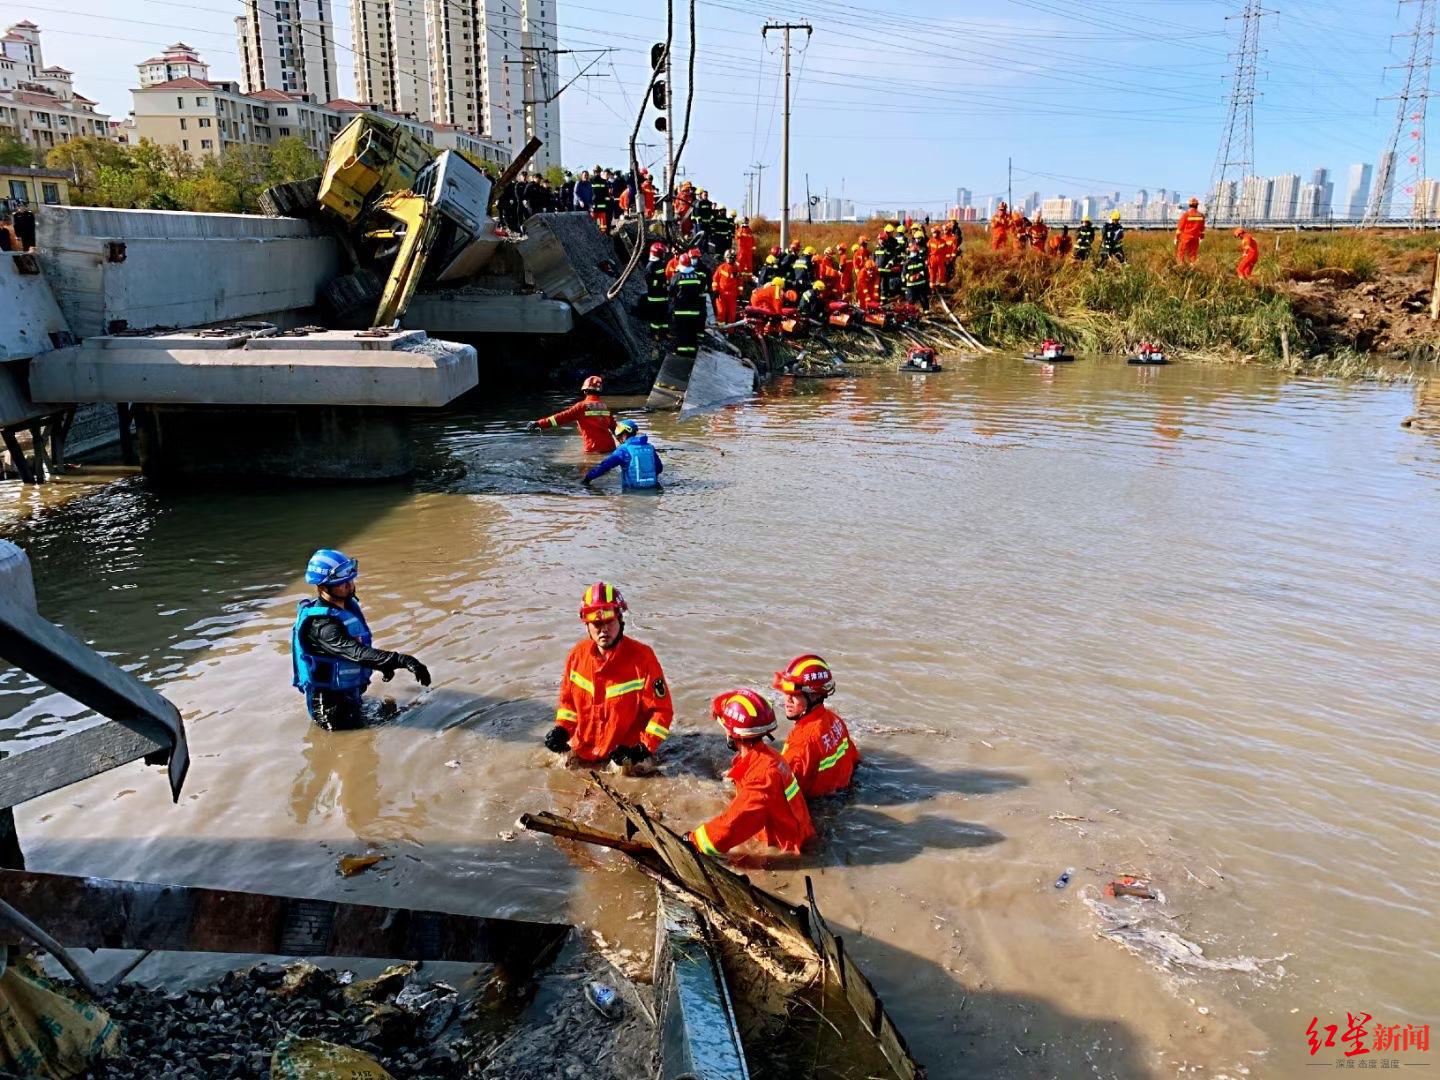 日本九州暴雨灾害死亡人数上升至25人 铁路桥被冲毁